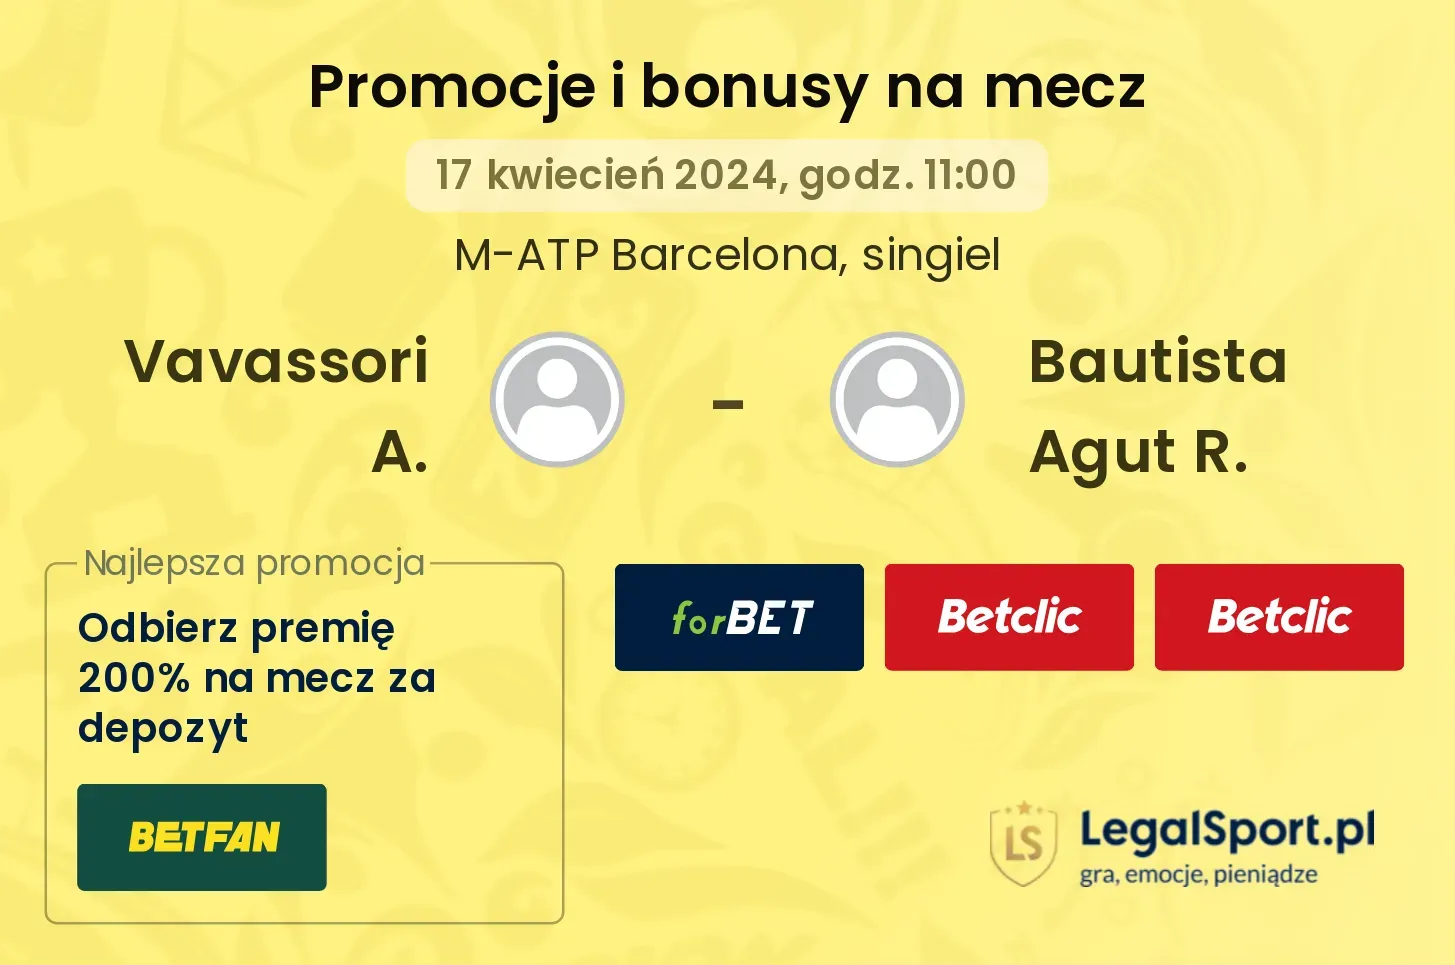 Vavassori A. - Bautista Agut R. promocje bonusy na mecz